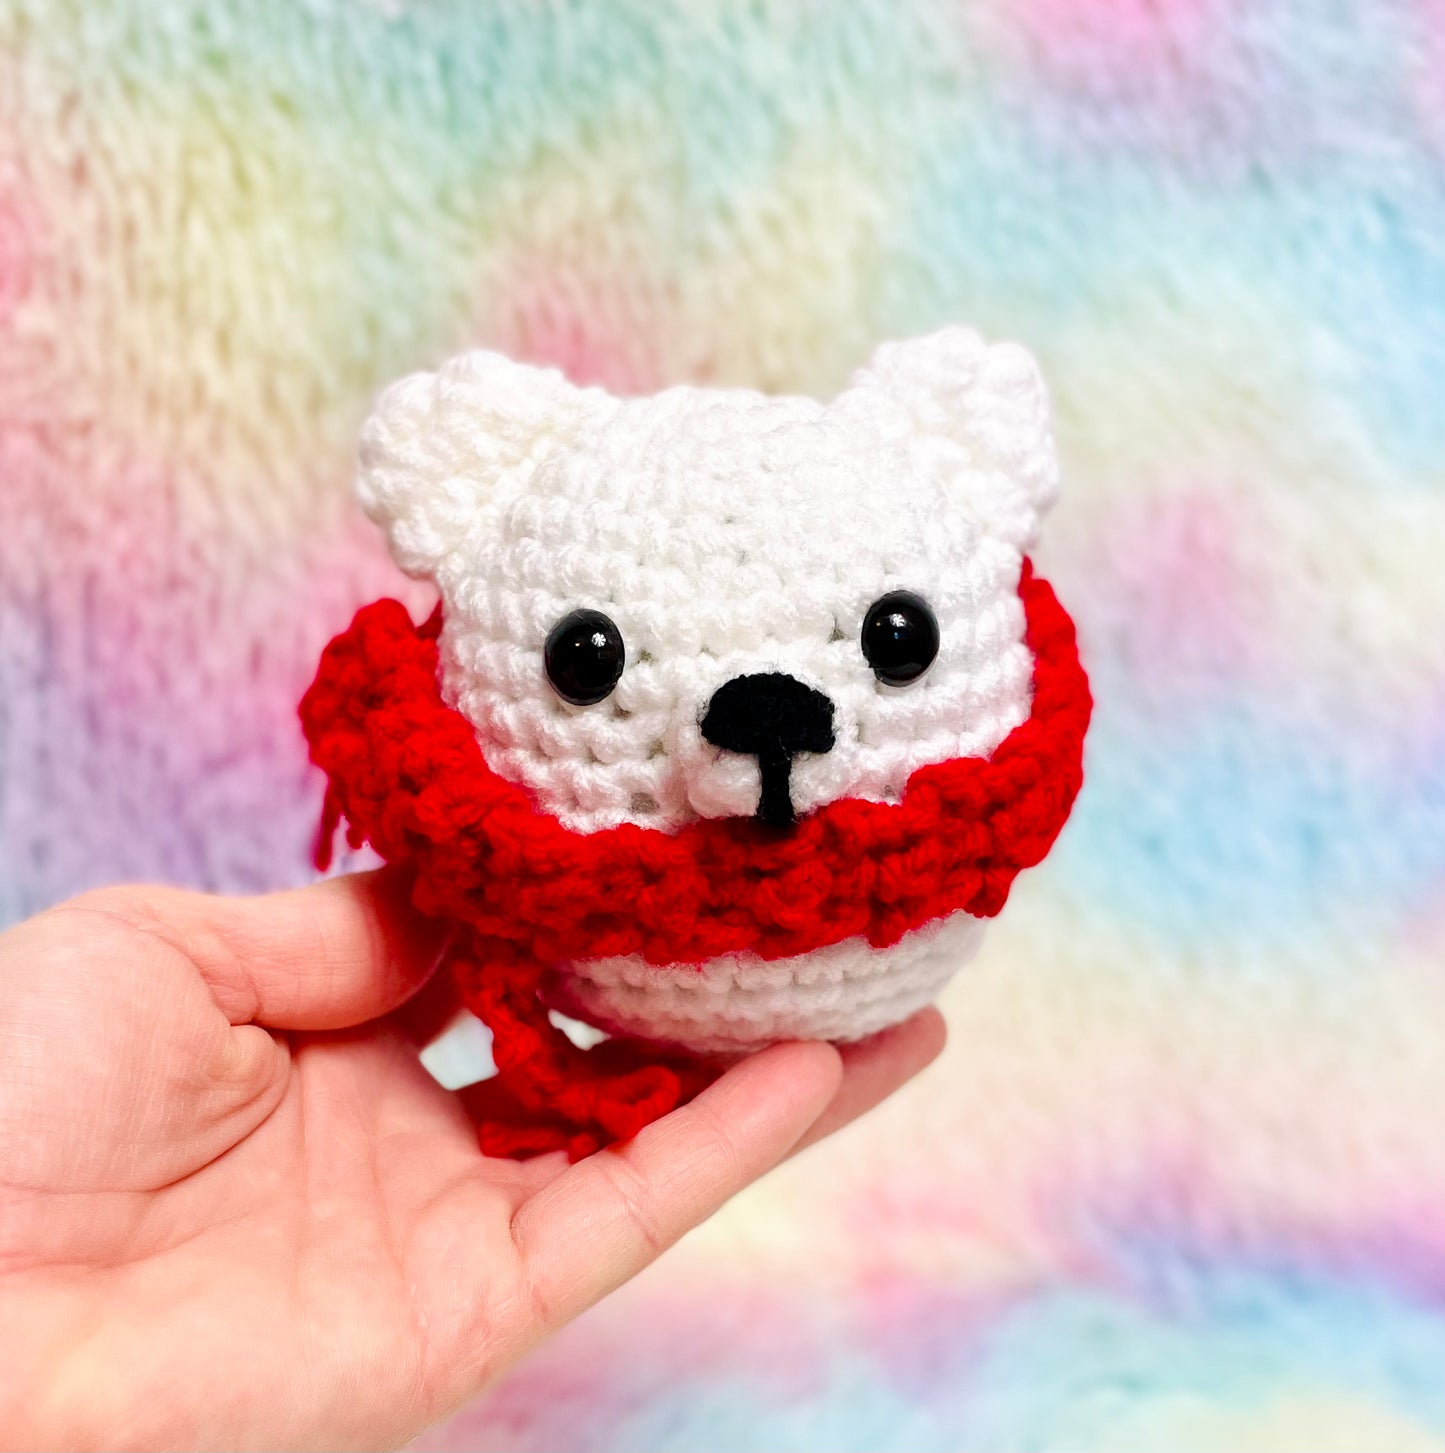 Pedro the Polar Bear Complete Crochet Kit | Beginner friendly